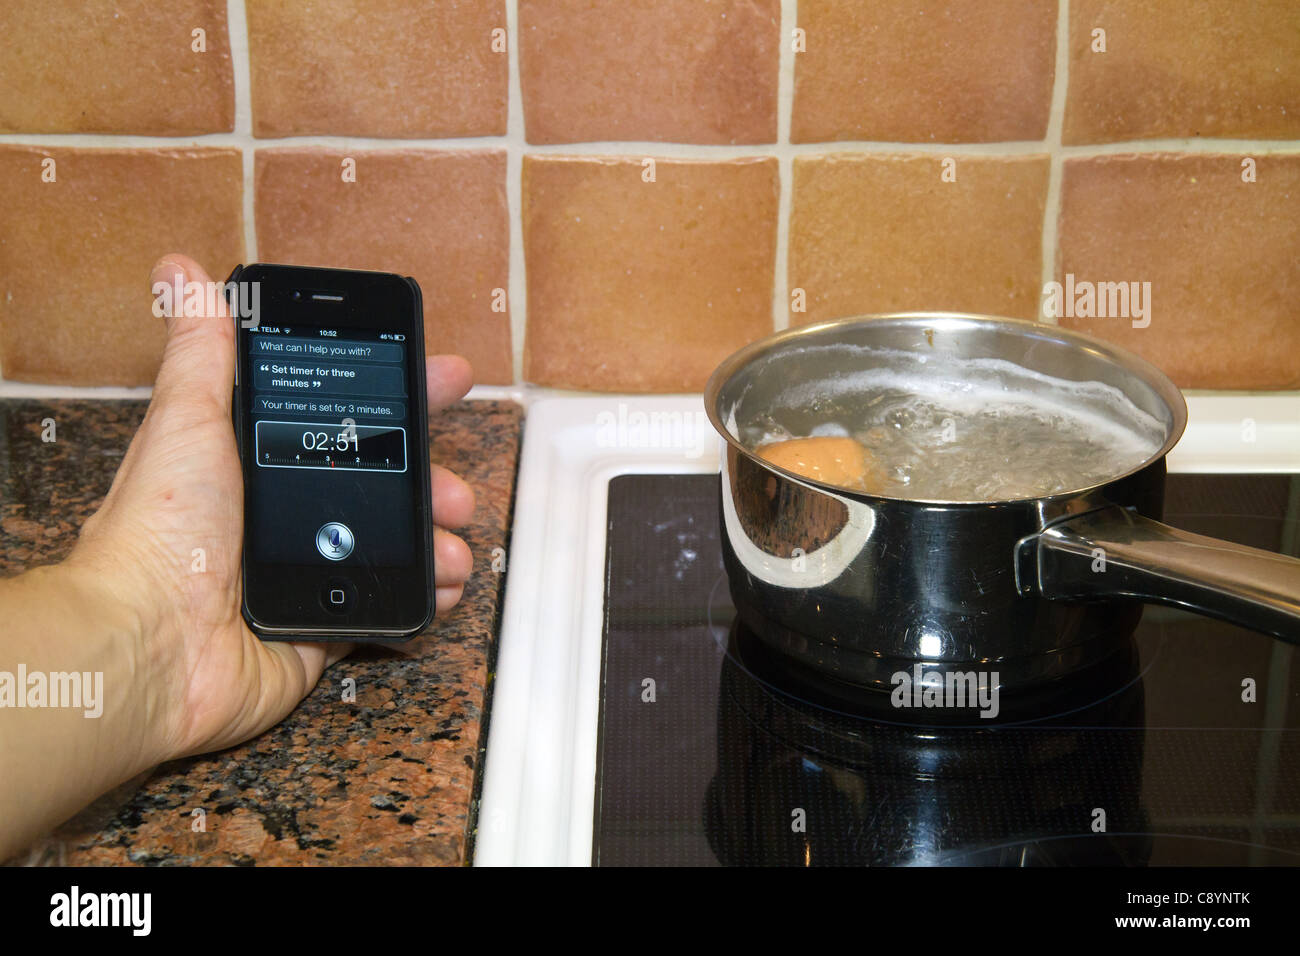 Utilizzando Siri personal assistant applicazione su un iPhone 4S utilizzando Controllo vocale per impostare il timer per tre minuti mentre le uova di ebollizione Foto Stock